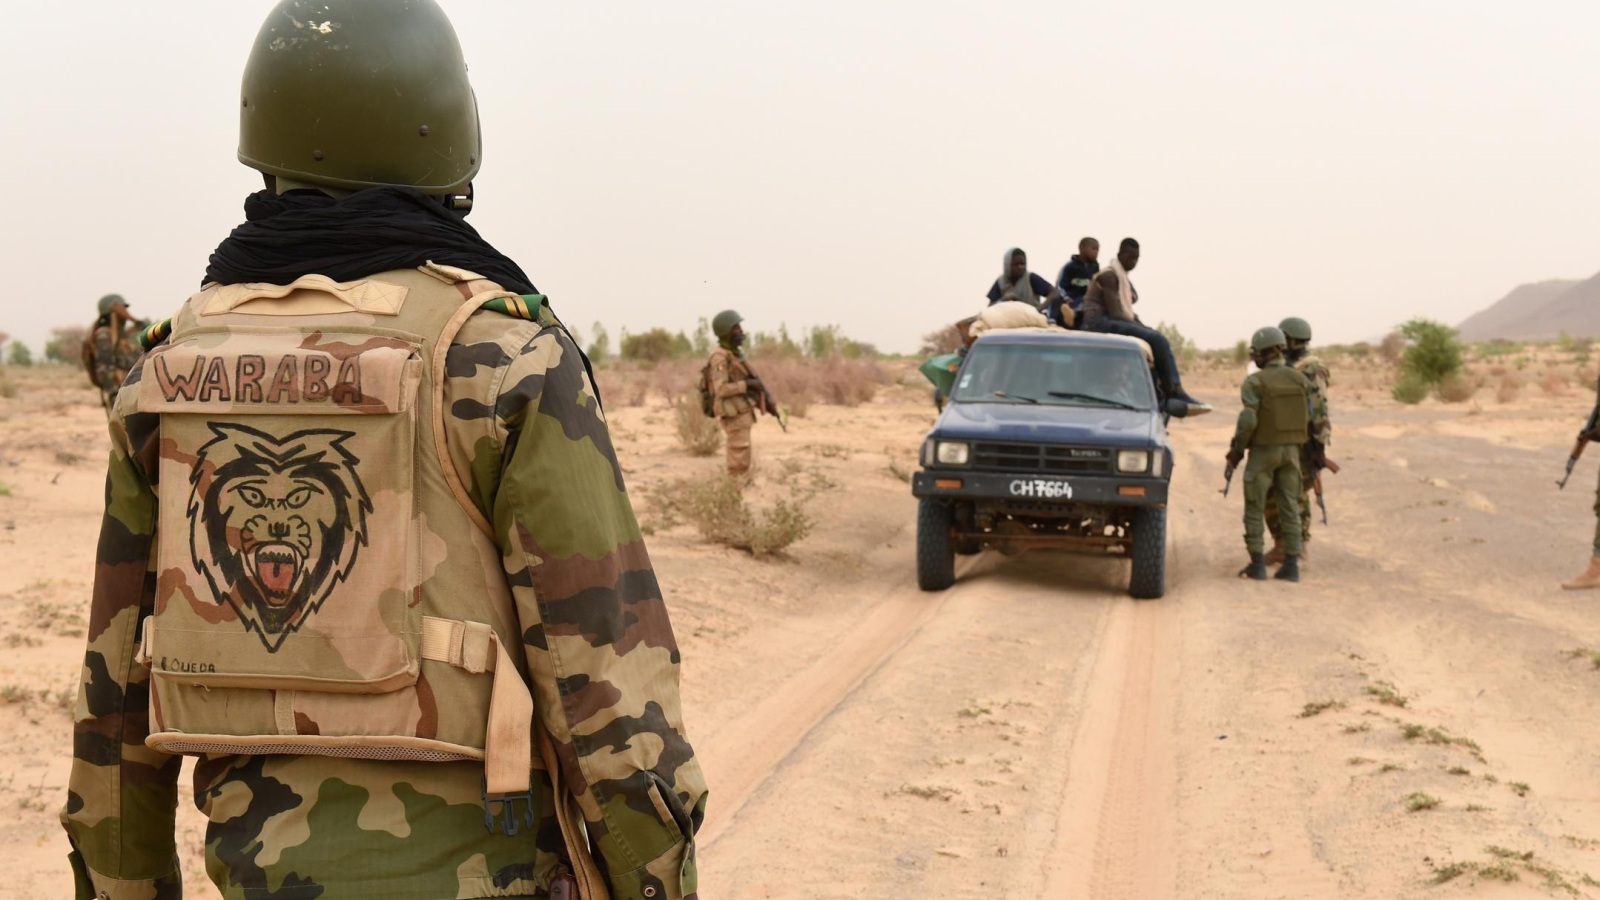 ‪تضم القوة قوات من مالي والنيجر وتشاد وبوركينا فاسو وموريتانيا (الفرنسية/غيتي-أرشيف)‬ تضم القوة قوات من مالي والنيجر وتشاد وبوركينا فاسو وموريتانيا (الفرنسية/غيتي-أرشيف)